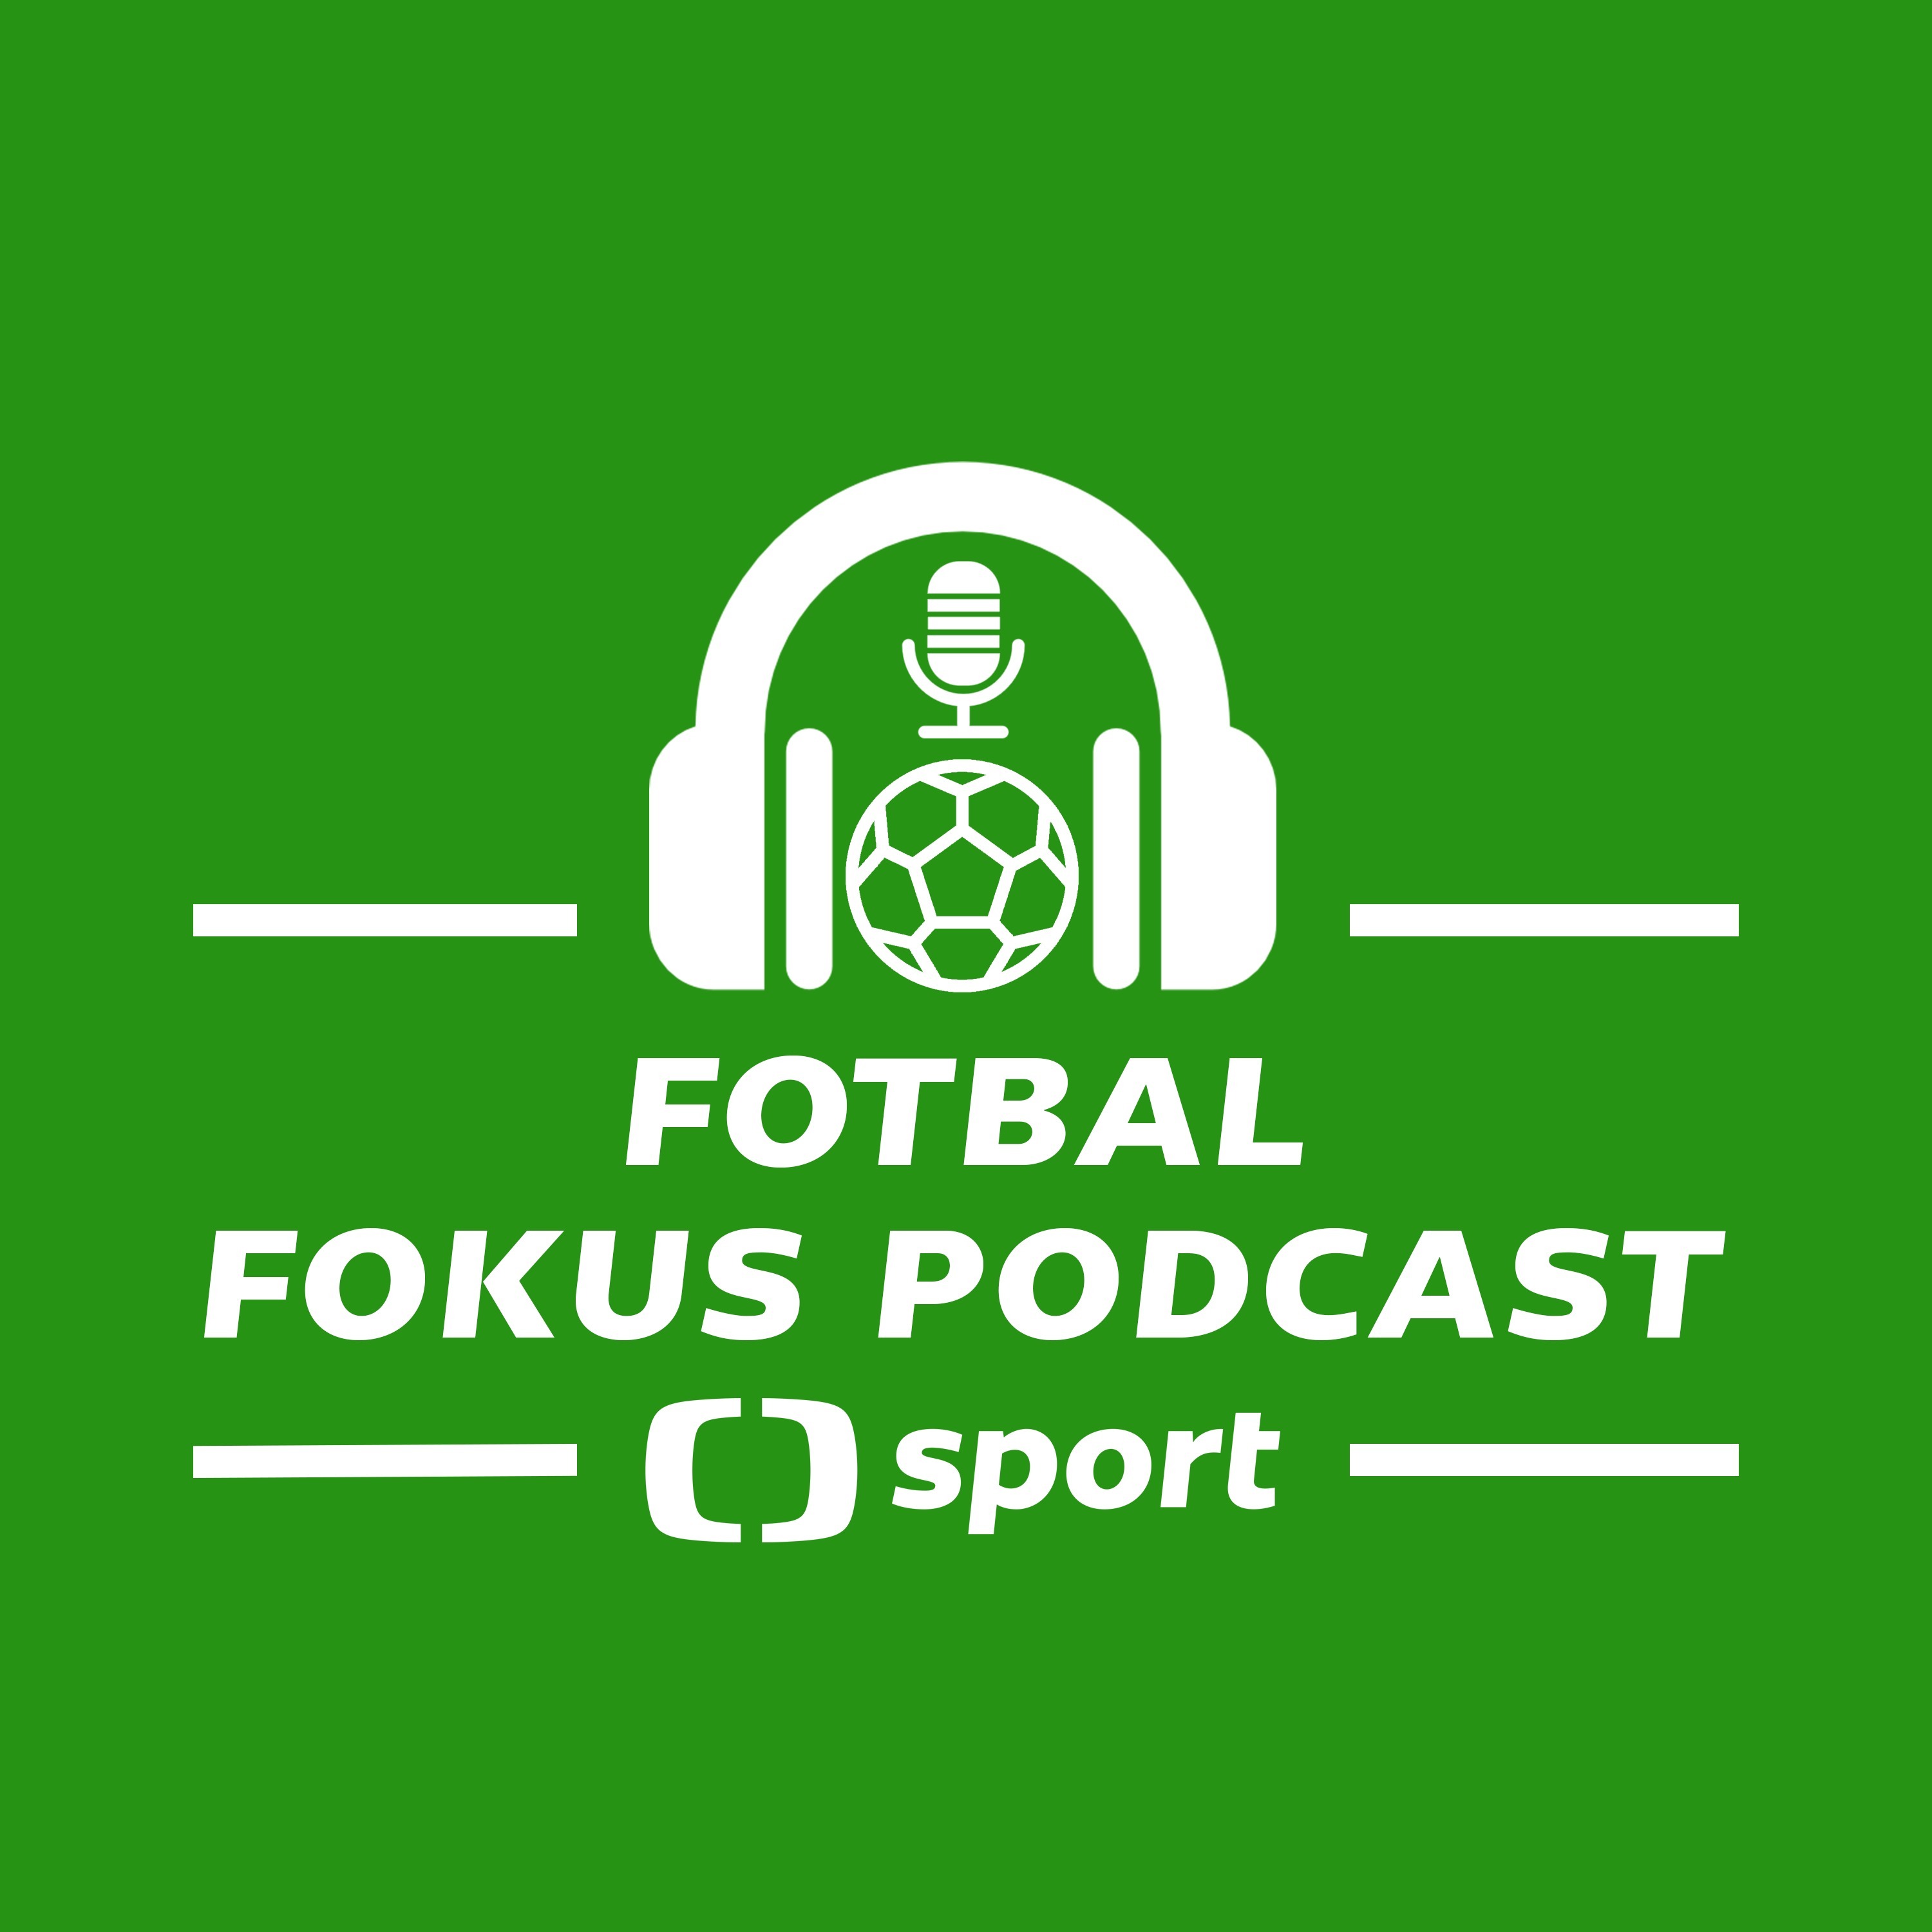 Fotbal fokus podcast: Měla by se liga dohrát a byl by závěr po dlouhé pauze regulérní?